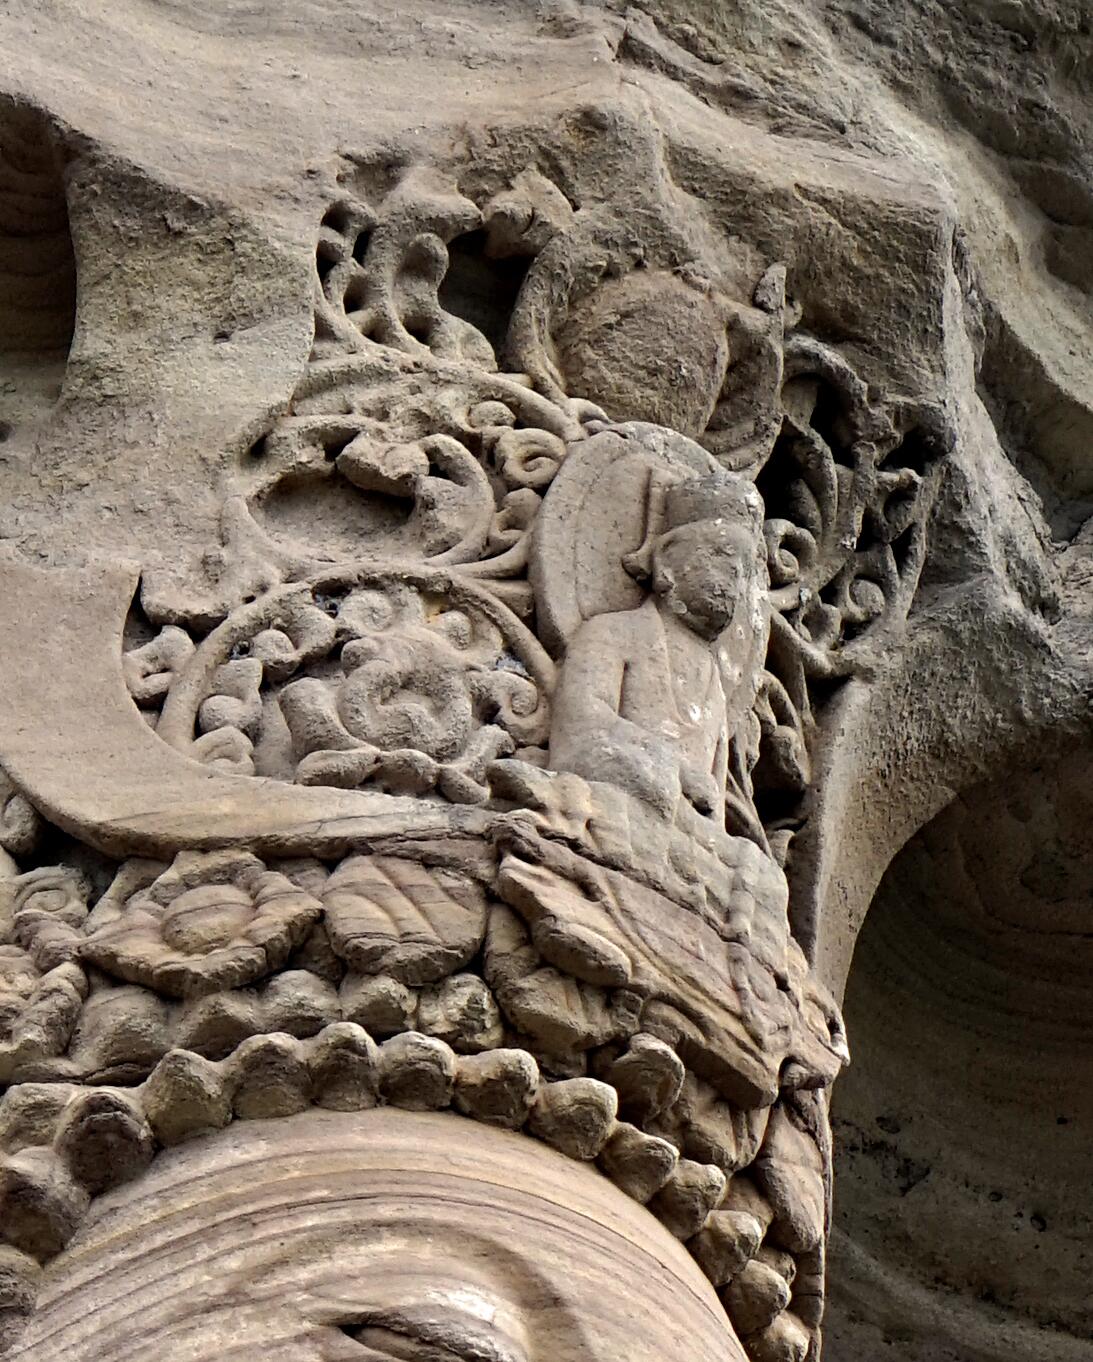 茗山寺5号龛毗卢洞冠中的柳本尊和站立于上的金翅鸟残迹